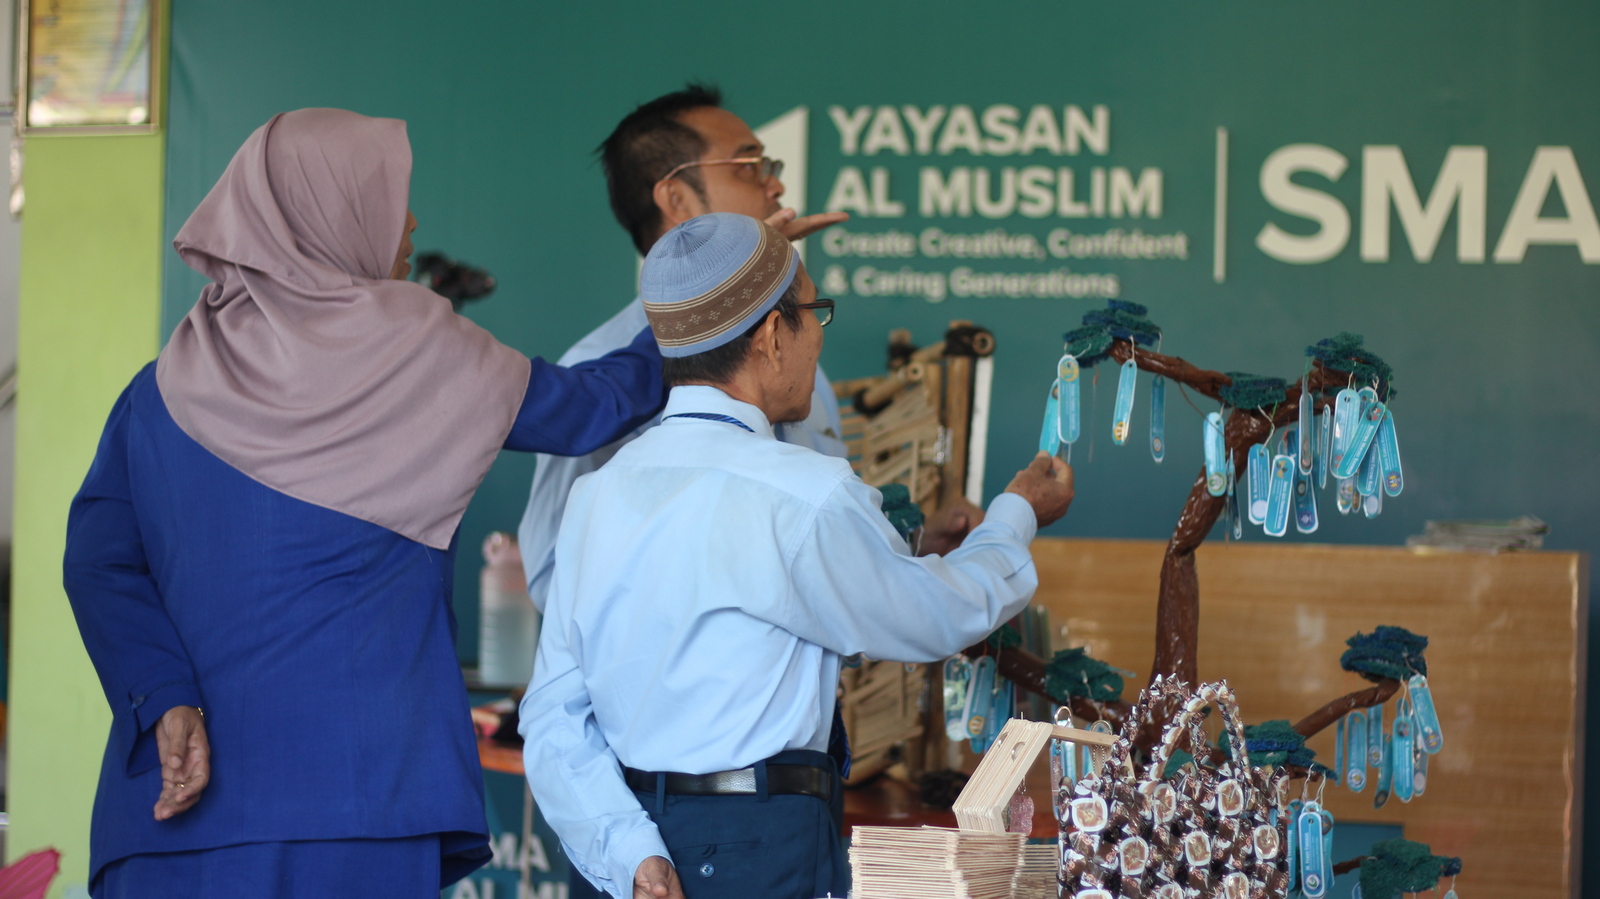 SMA Al Muslim Expo 2023